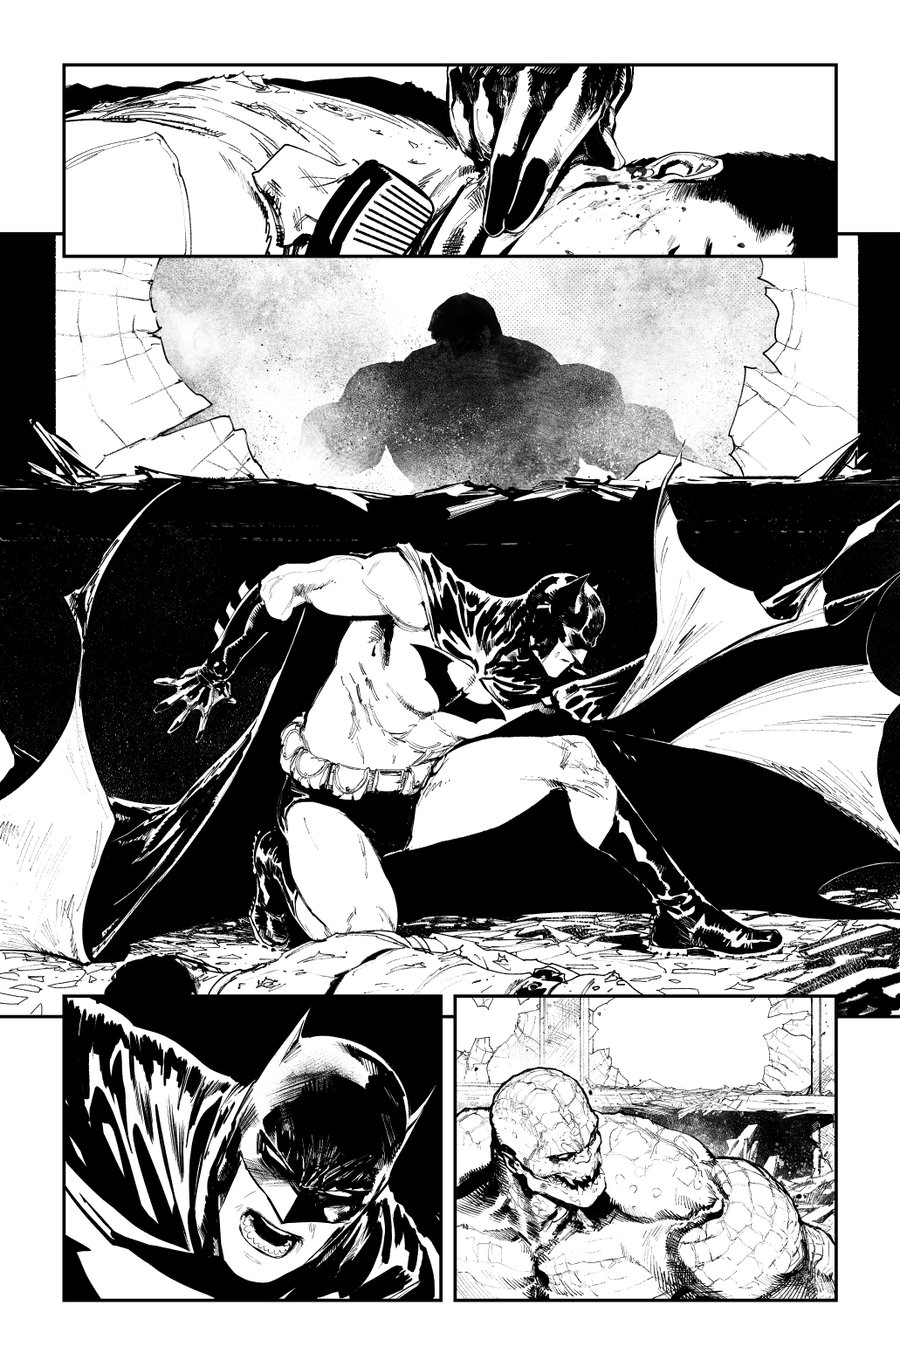 Image of BATMAN KILLING TIME #1 p.12